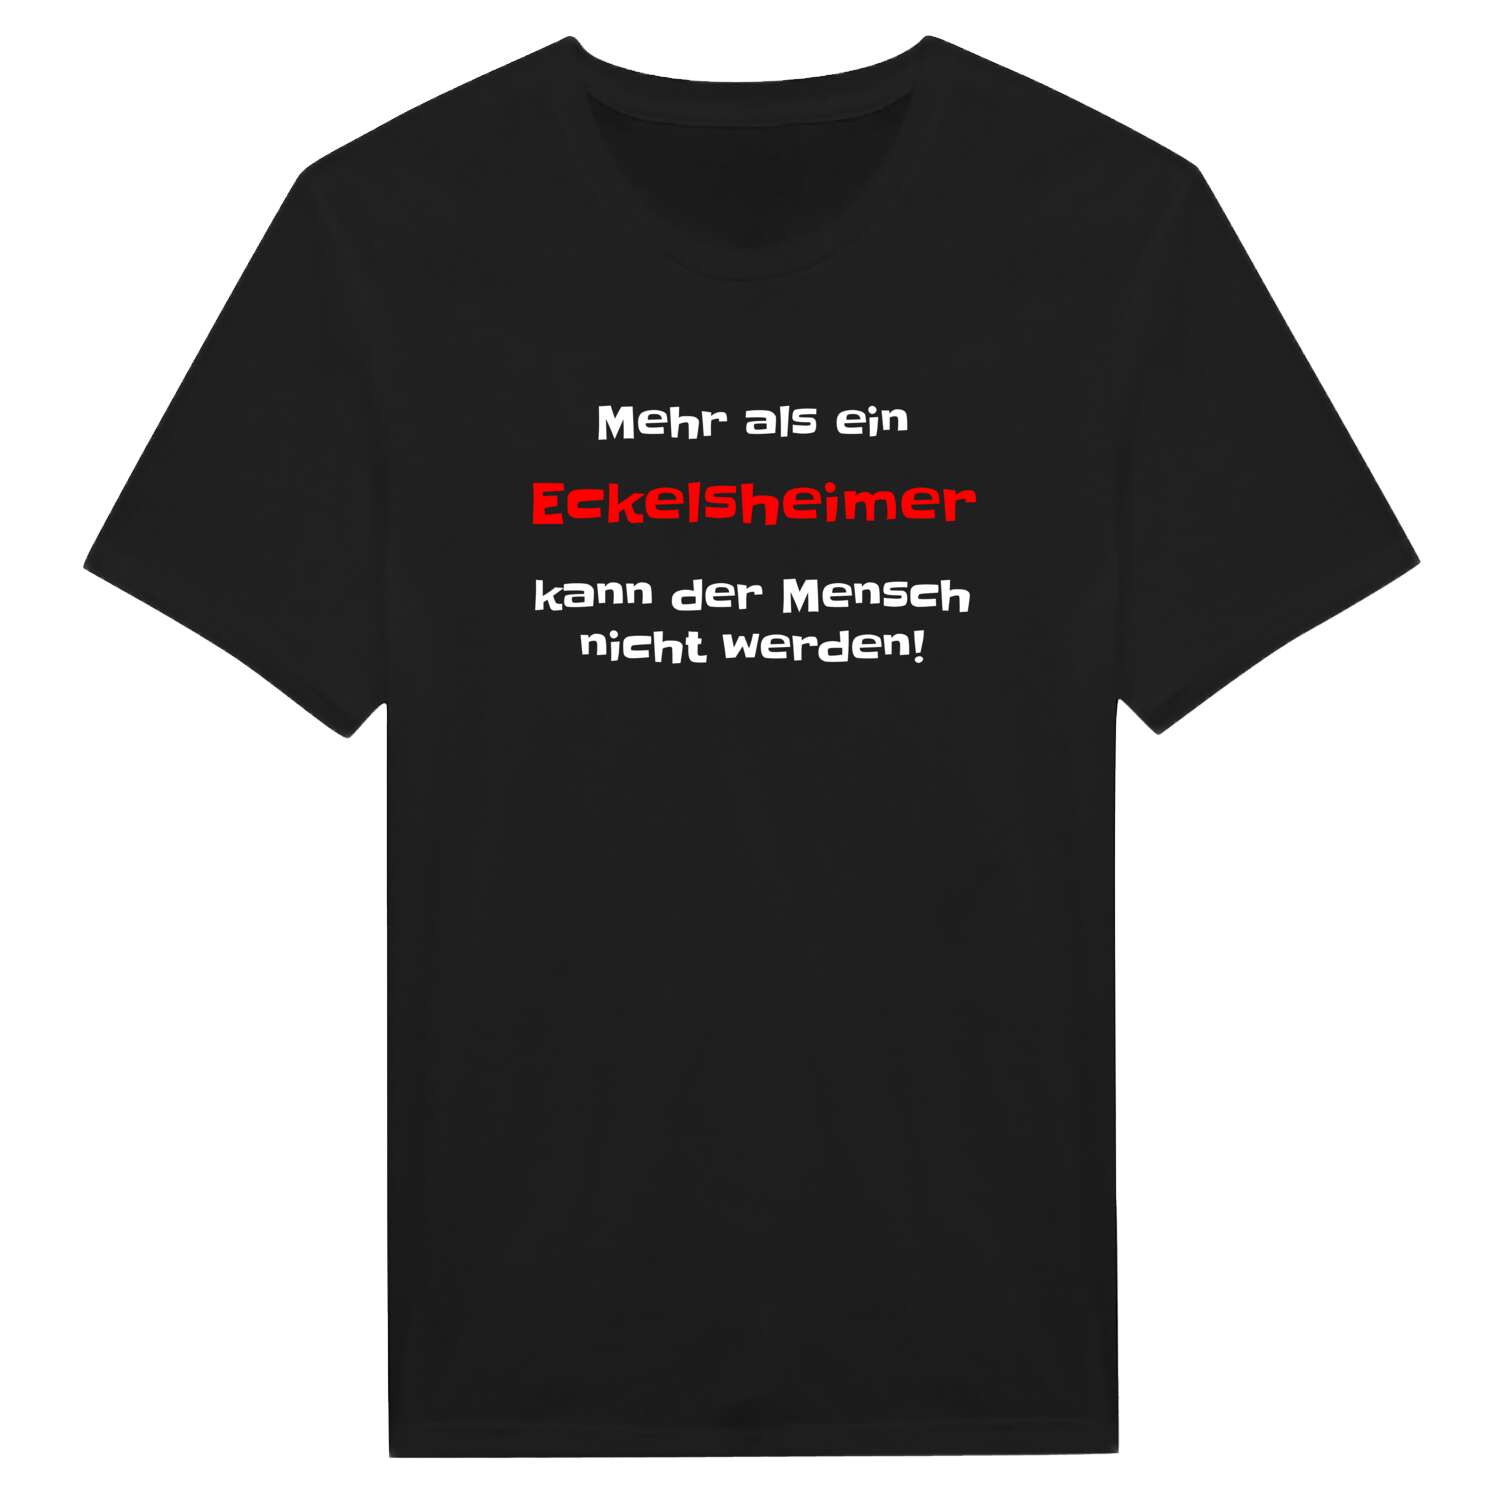 Eckelsheim T-Shirt »Mehr als ein«